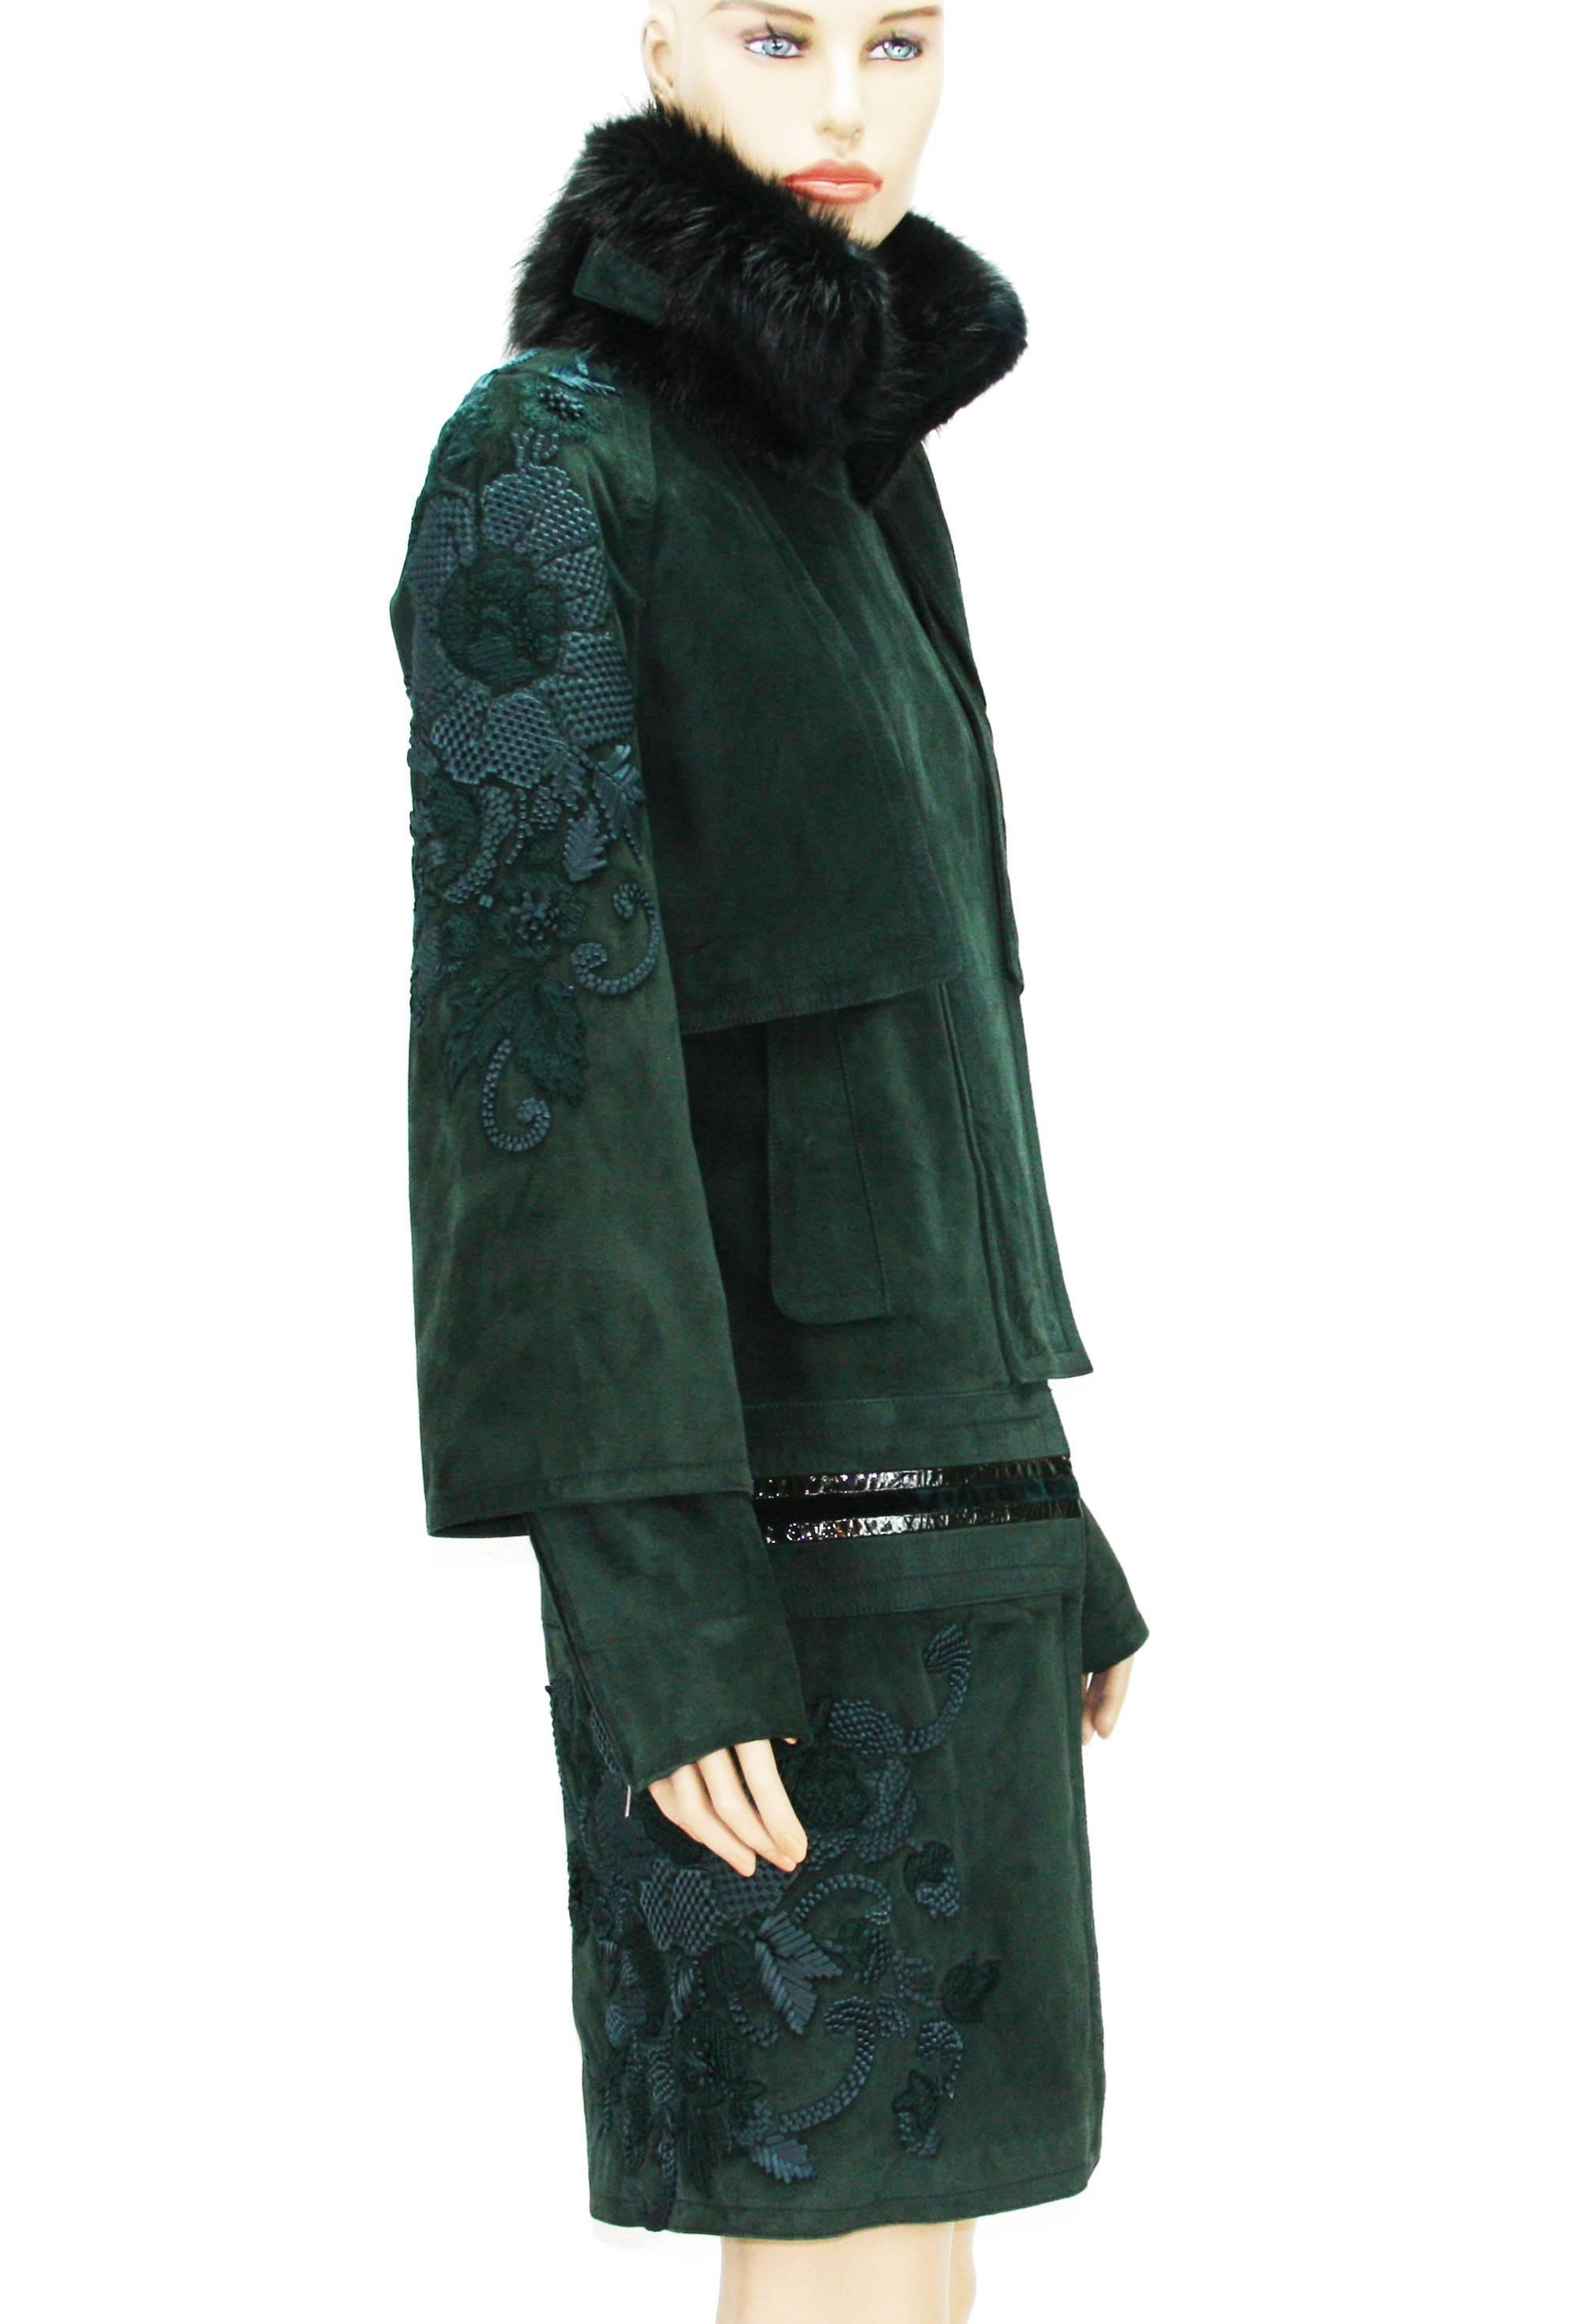 Tom Ford for Gucci - Manteau en daim vert forêt avec col en fourrure brodé, taille IT 42 US 6 Pour femmes en vente